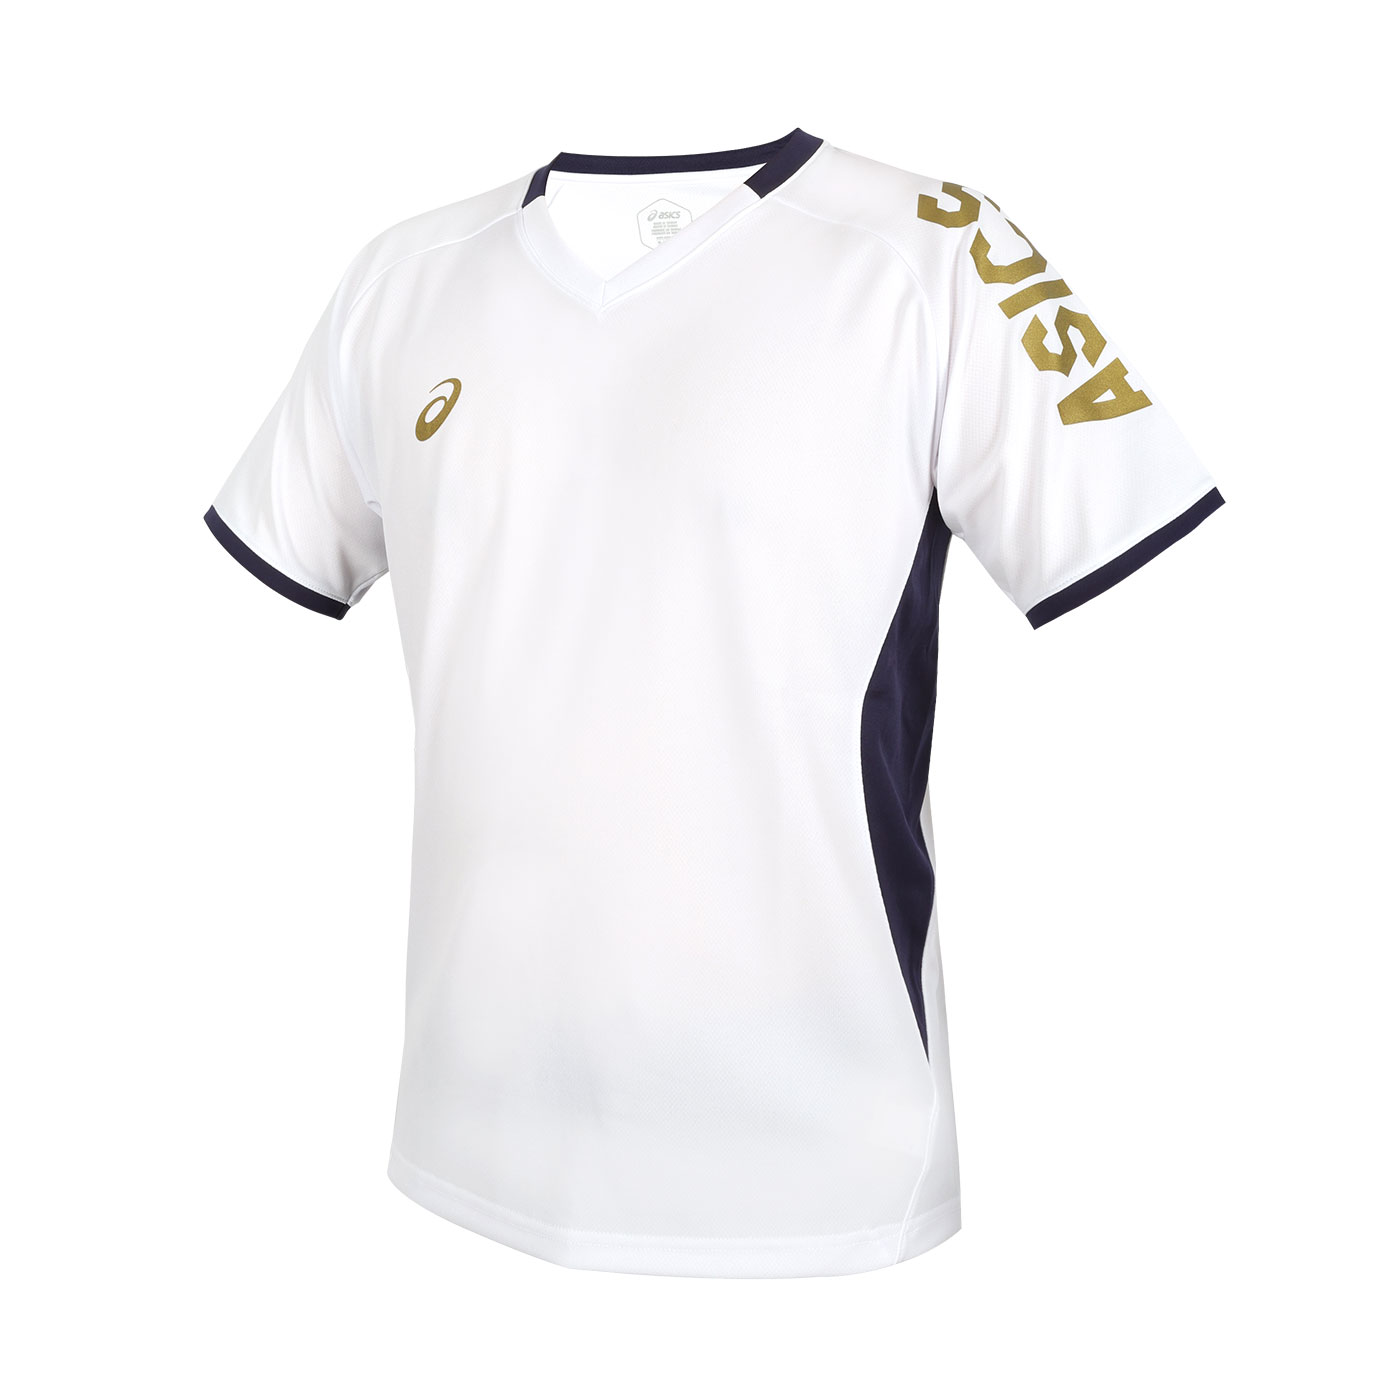 ASICS 排球短袖T恤  2053A196-100 - 白黑金